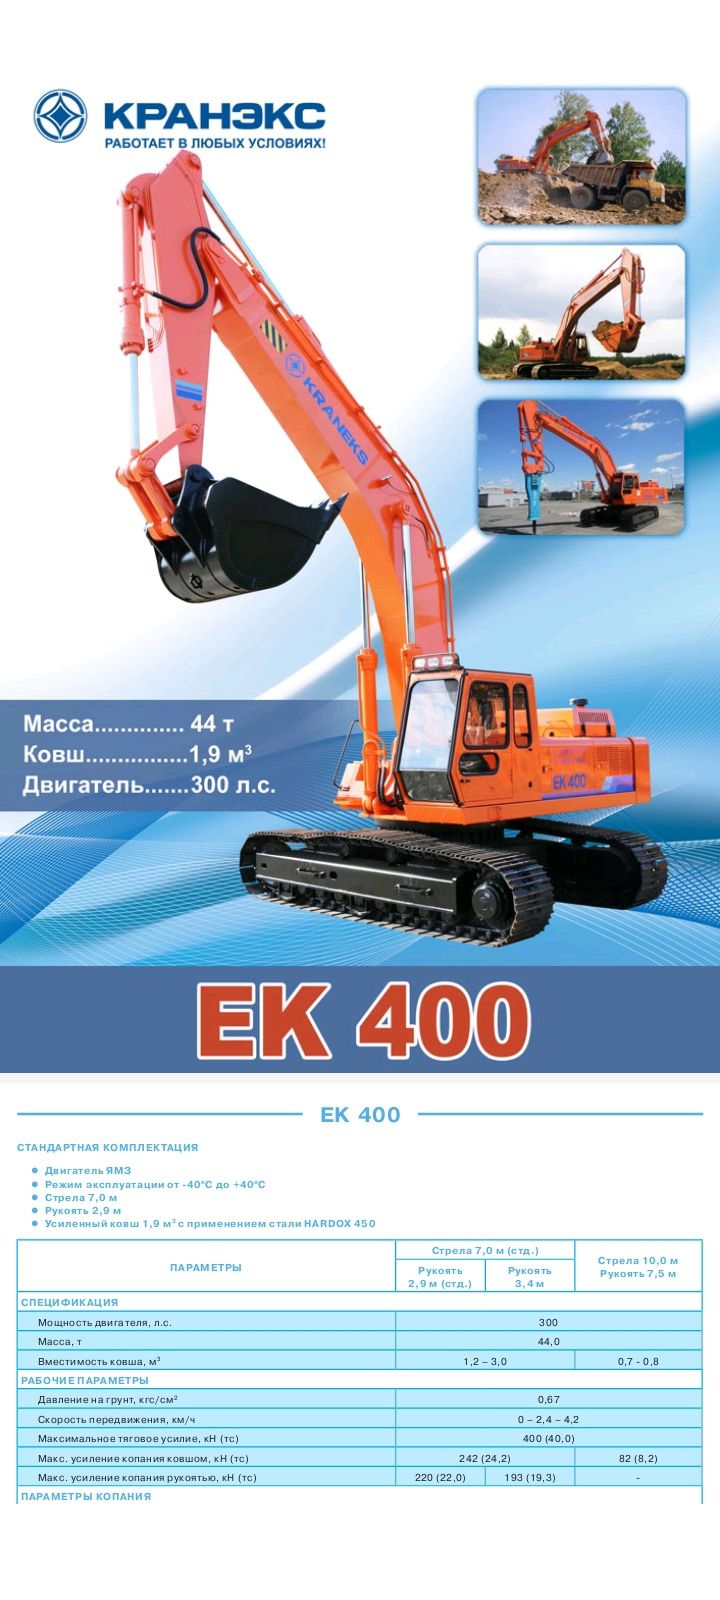 Экскаватор ЕК 400